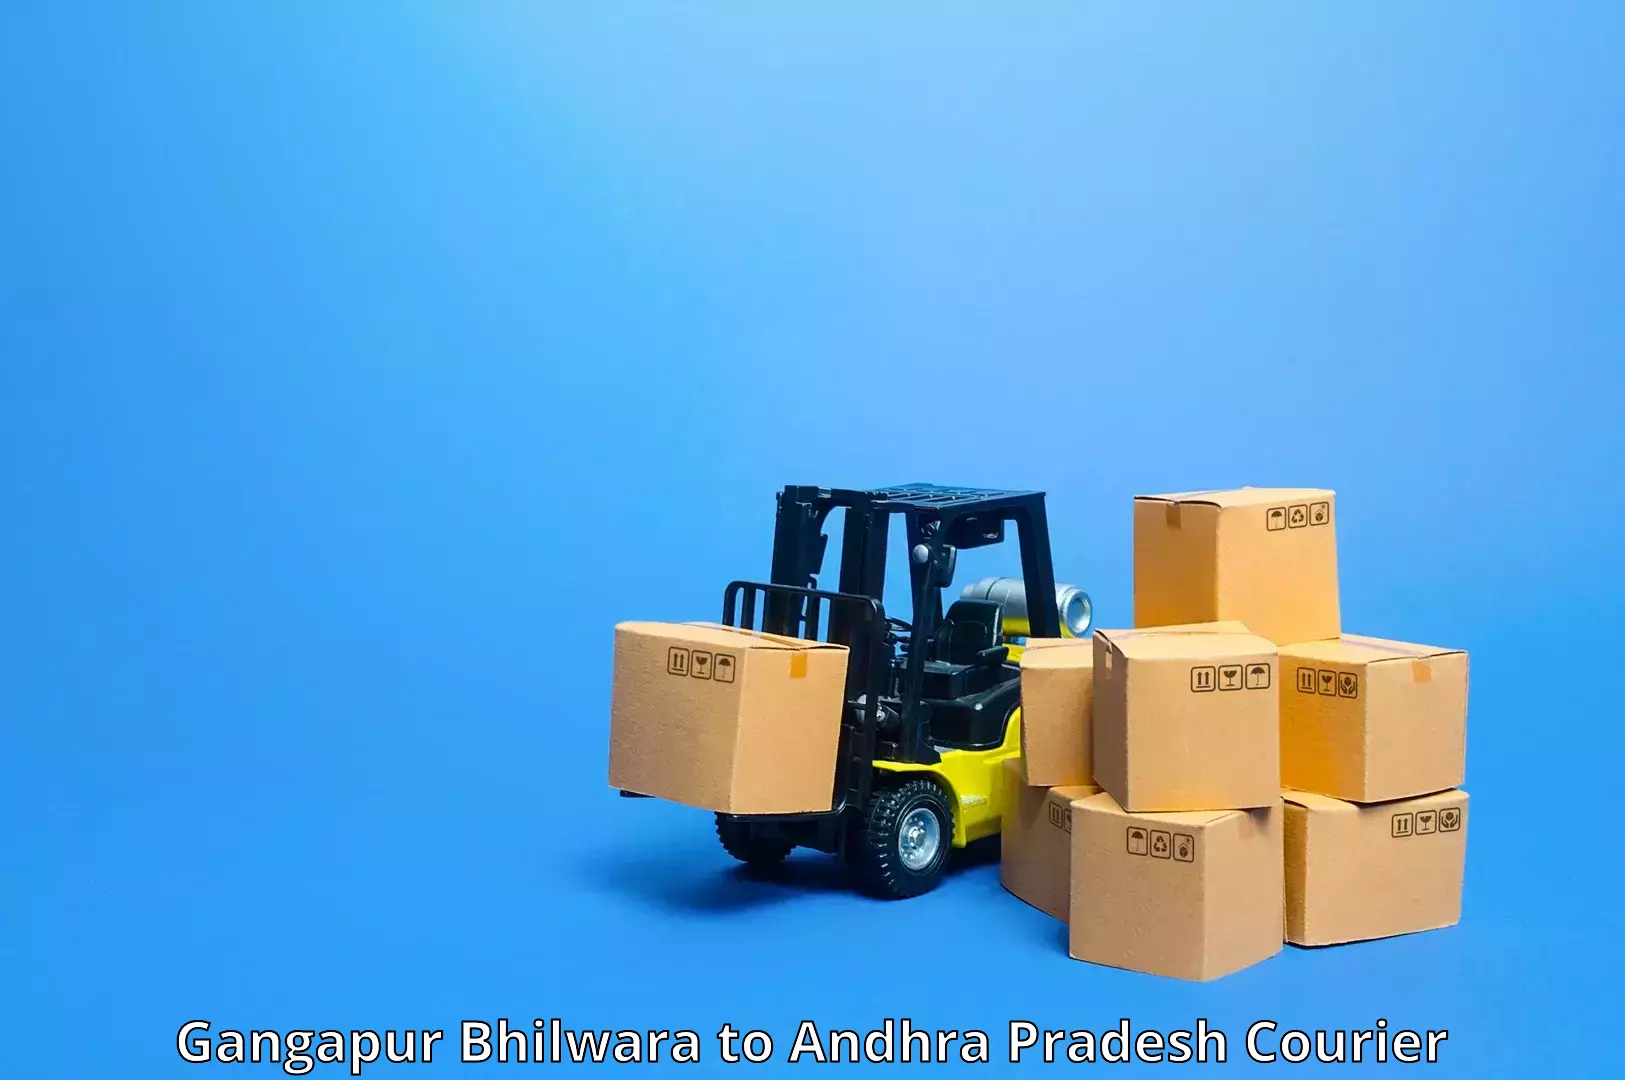 Sustainable shipping practices Gangapur Bhilwara to Samalkot